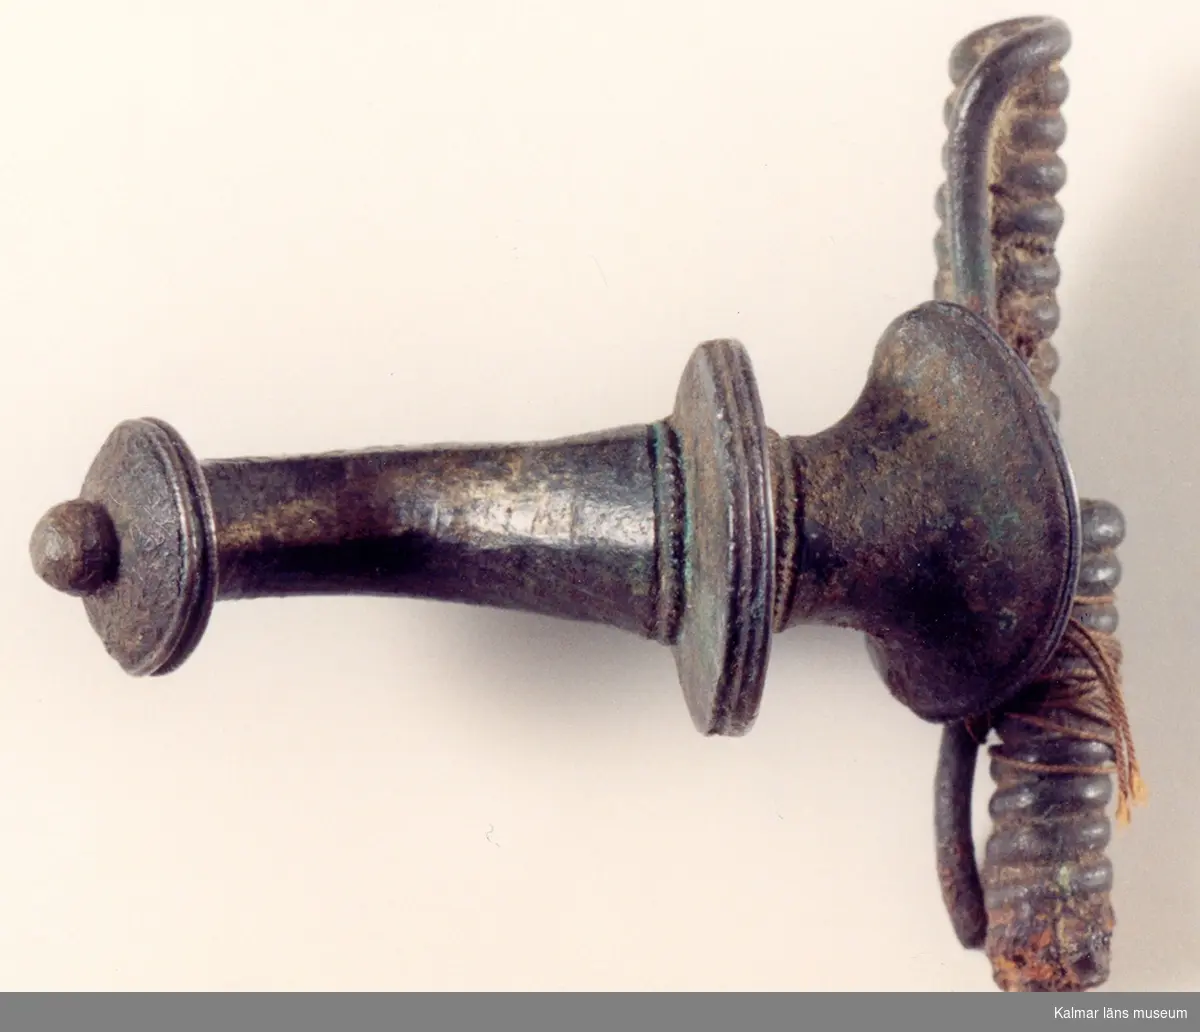 KLM 15. Bågspänne. Armborstfibula av brons. Fibulan har profilerad båge och en liten knopp i ena änden. Nålhållaren något avbruten. Datering: äldre romersk järnålder.